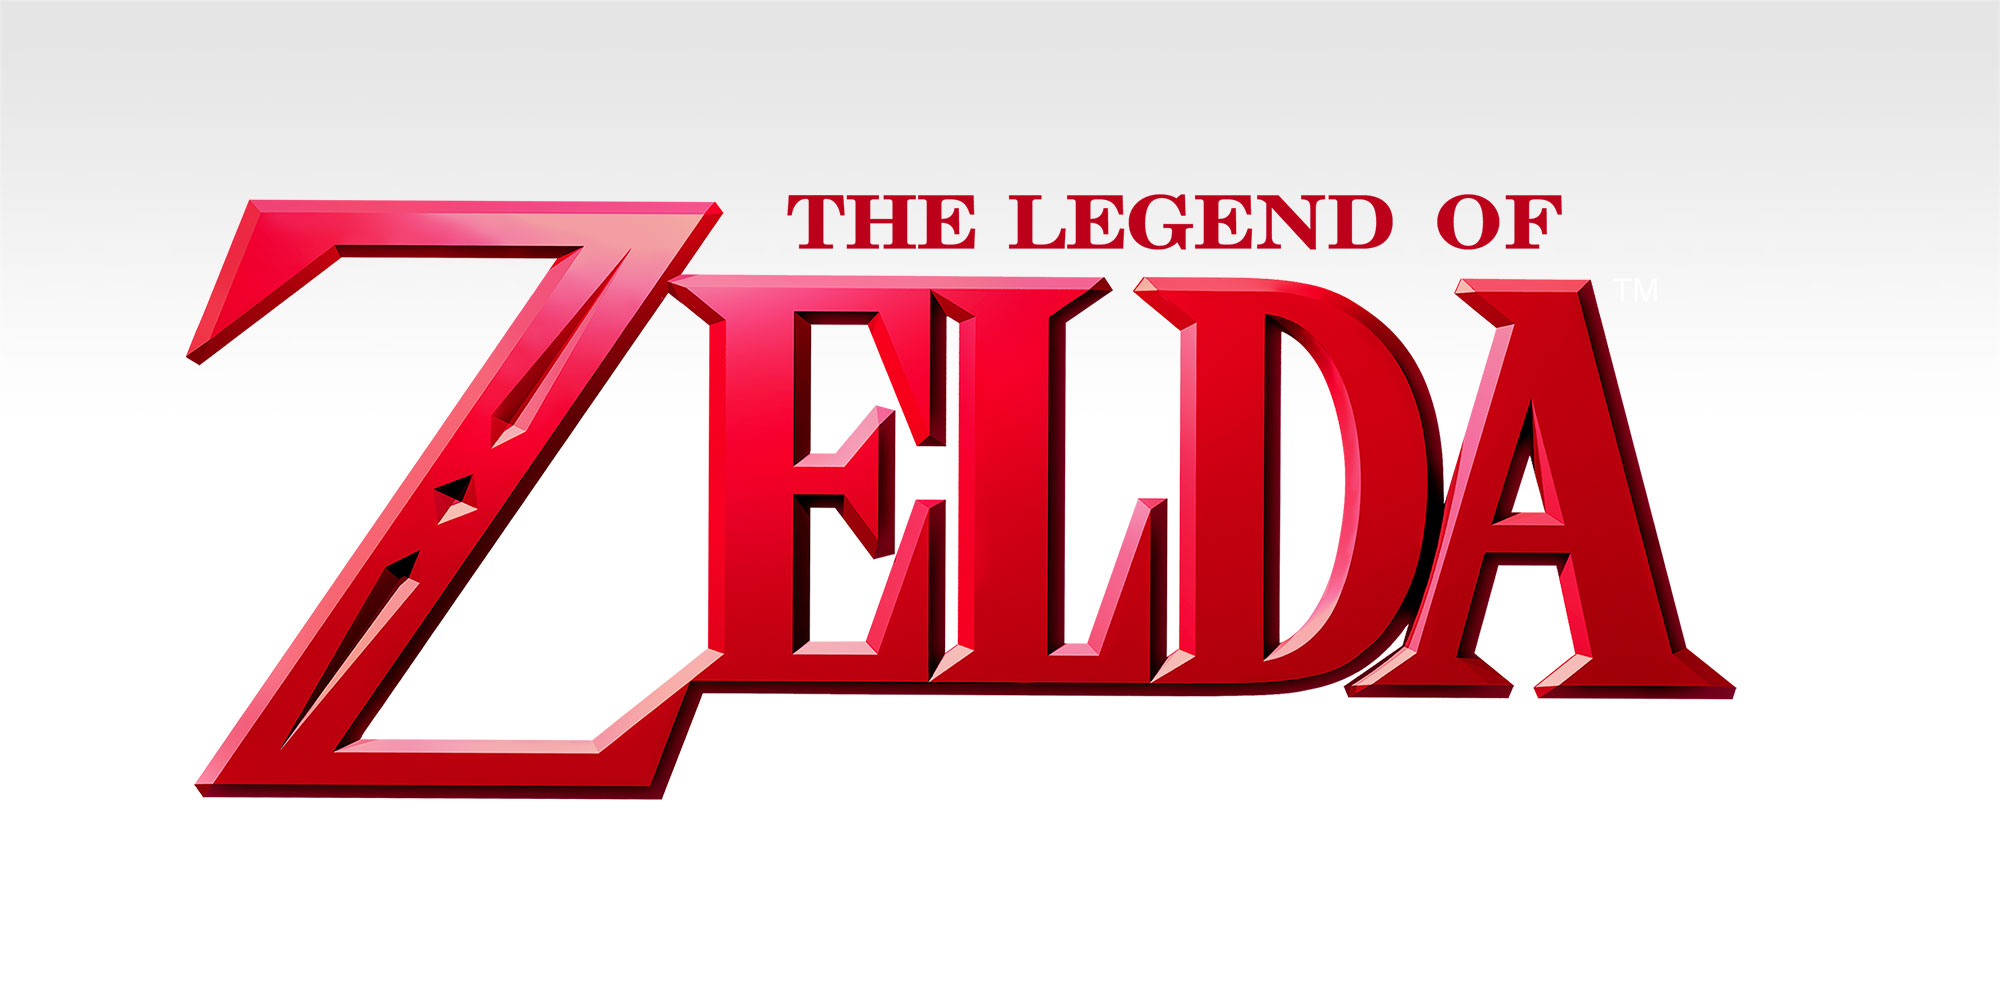 Dai un'occhiata ai dietro le quinte di The Legend of Zelda con dei documenti originali!